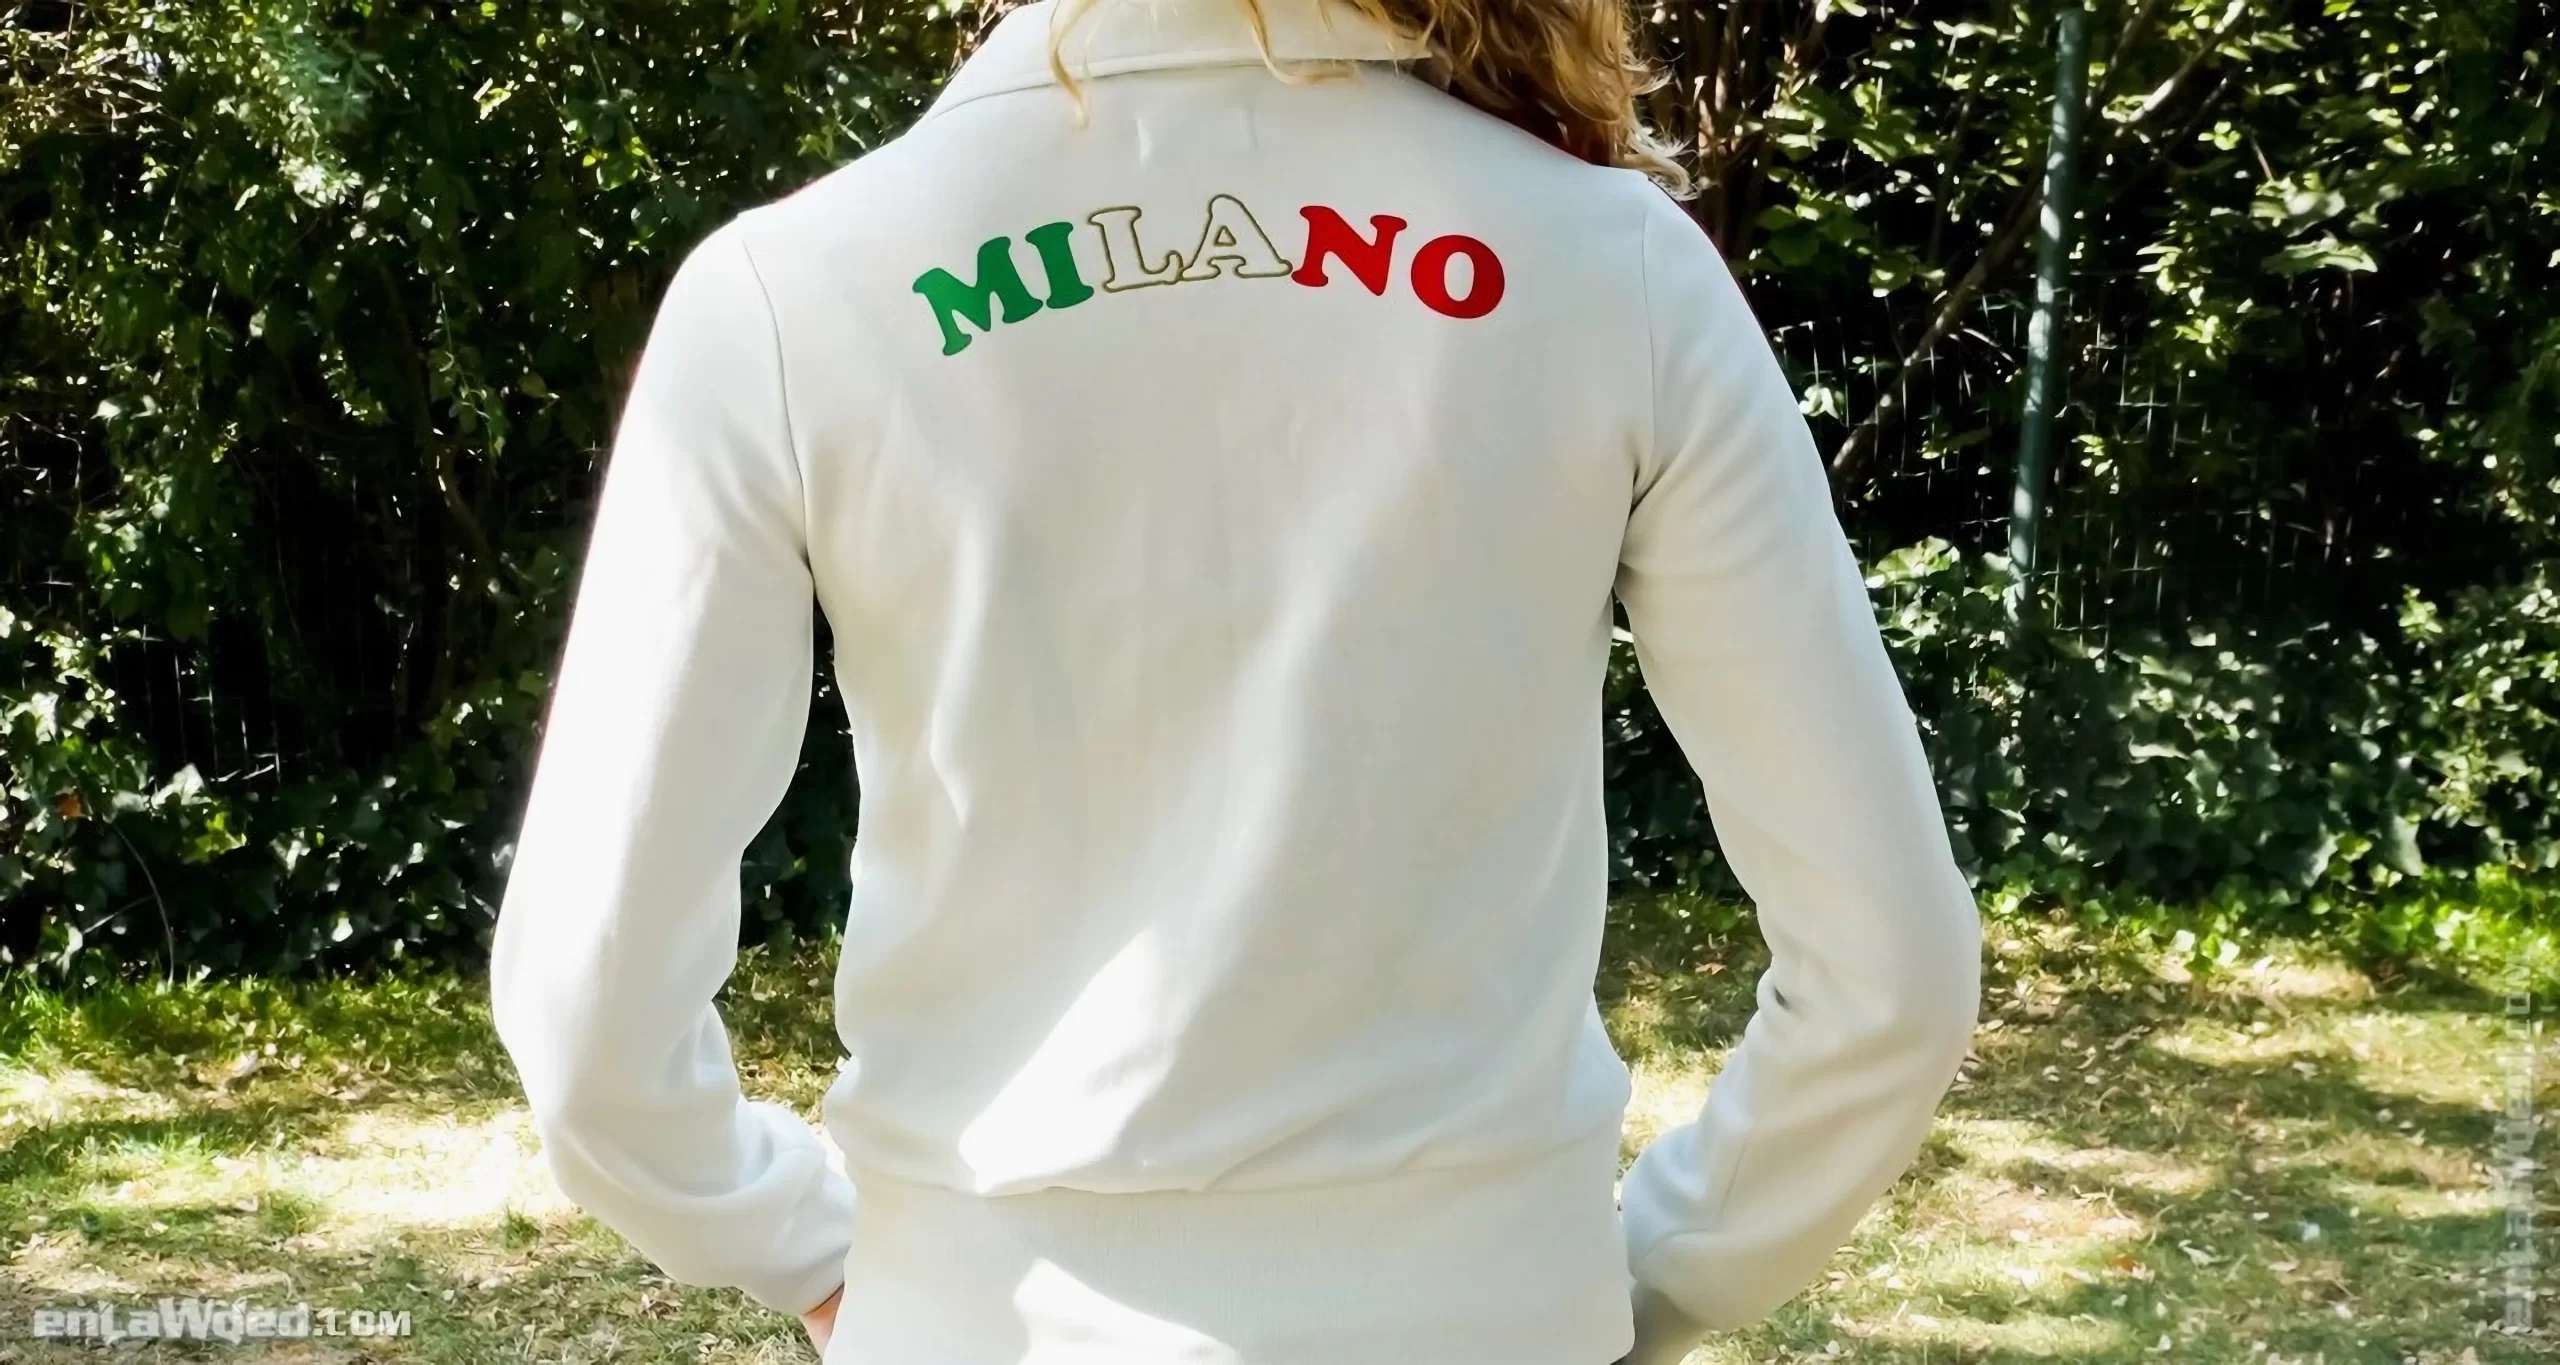 Women’s 2006 I Love Milano TT by Adidas: Irresistible (EnLawded.com file #lmc5zgfw5xop80crtu5)